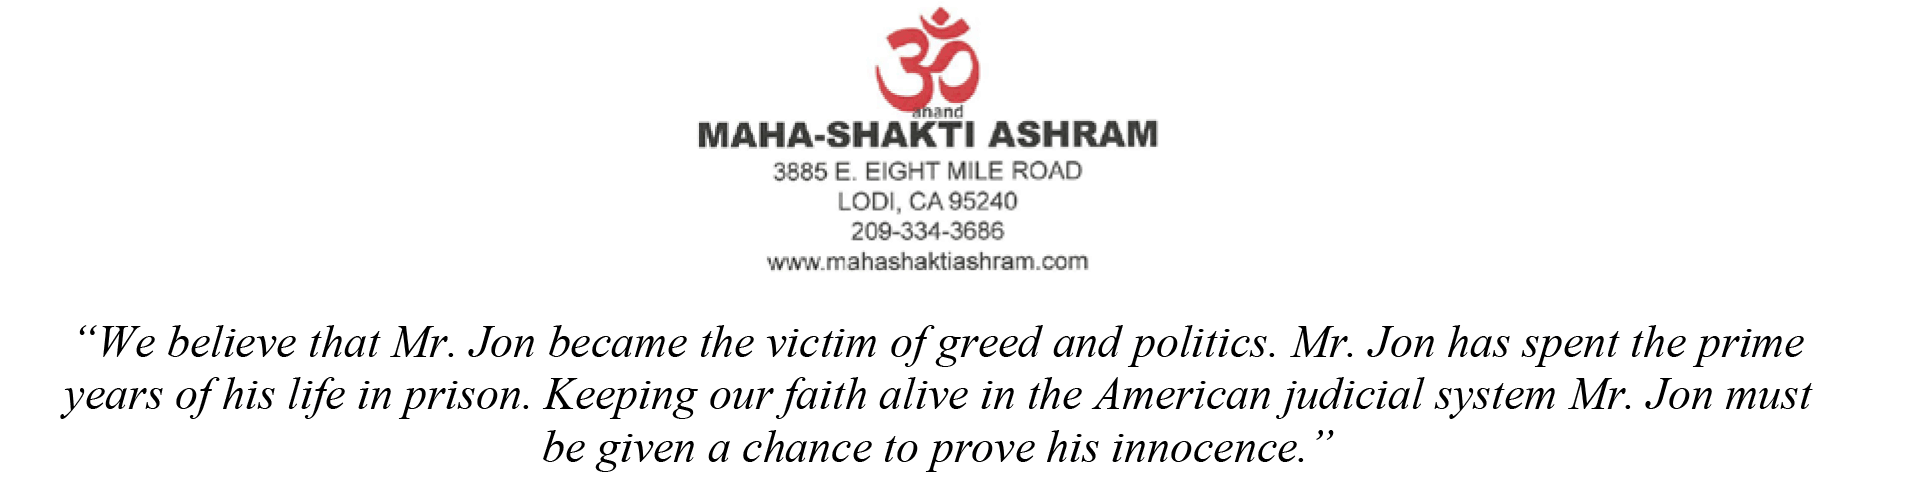 Maha-Shakti Ashram